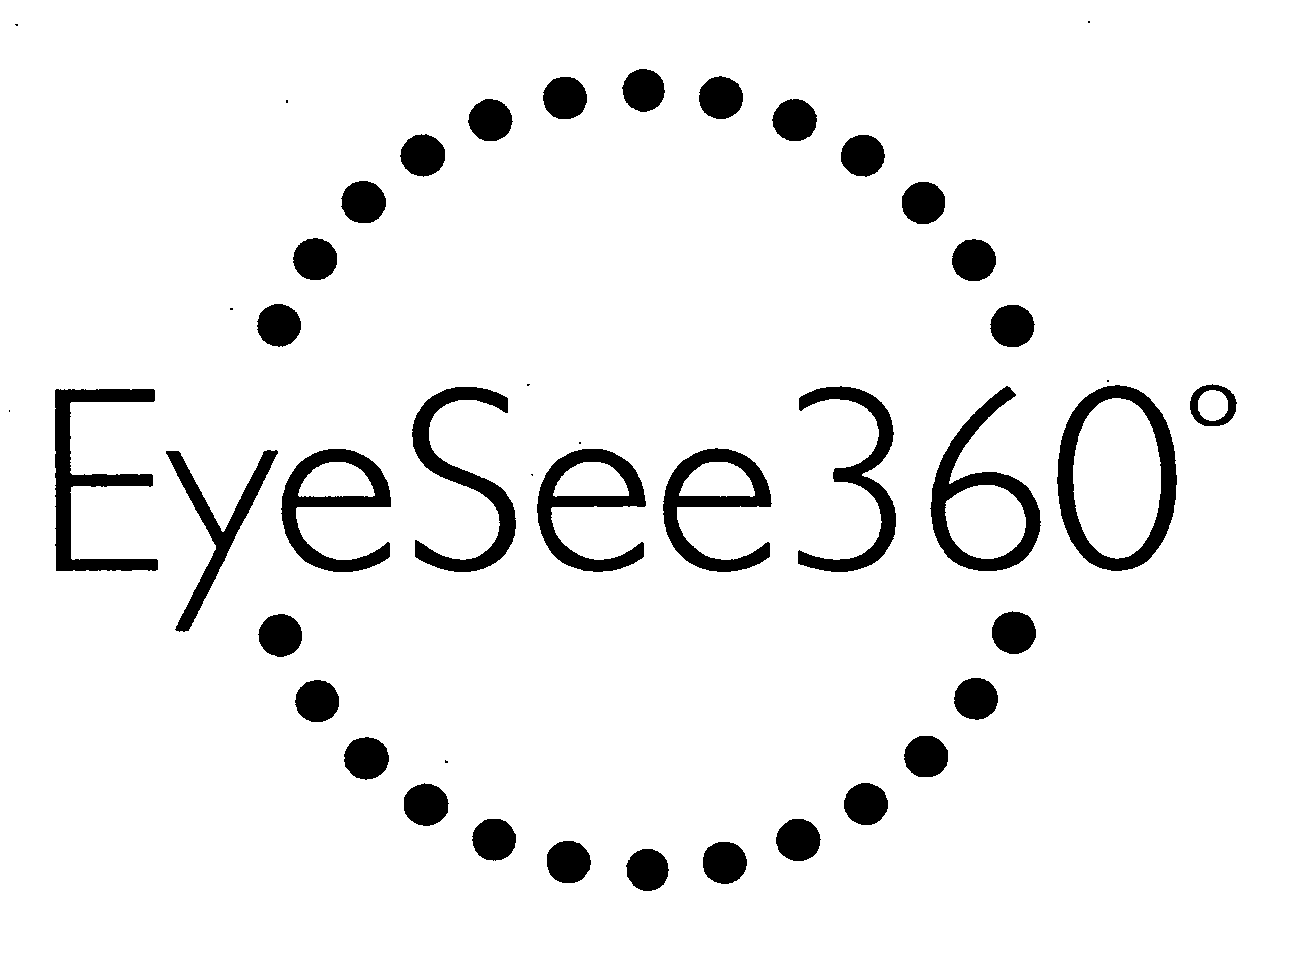  EYESEE360°